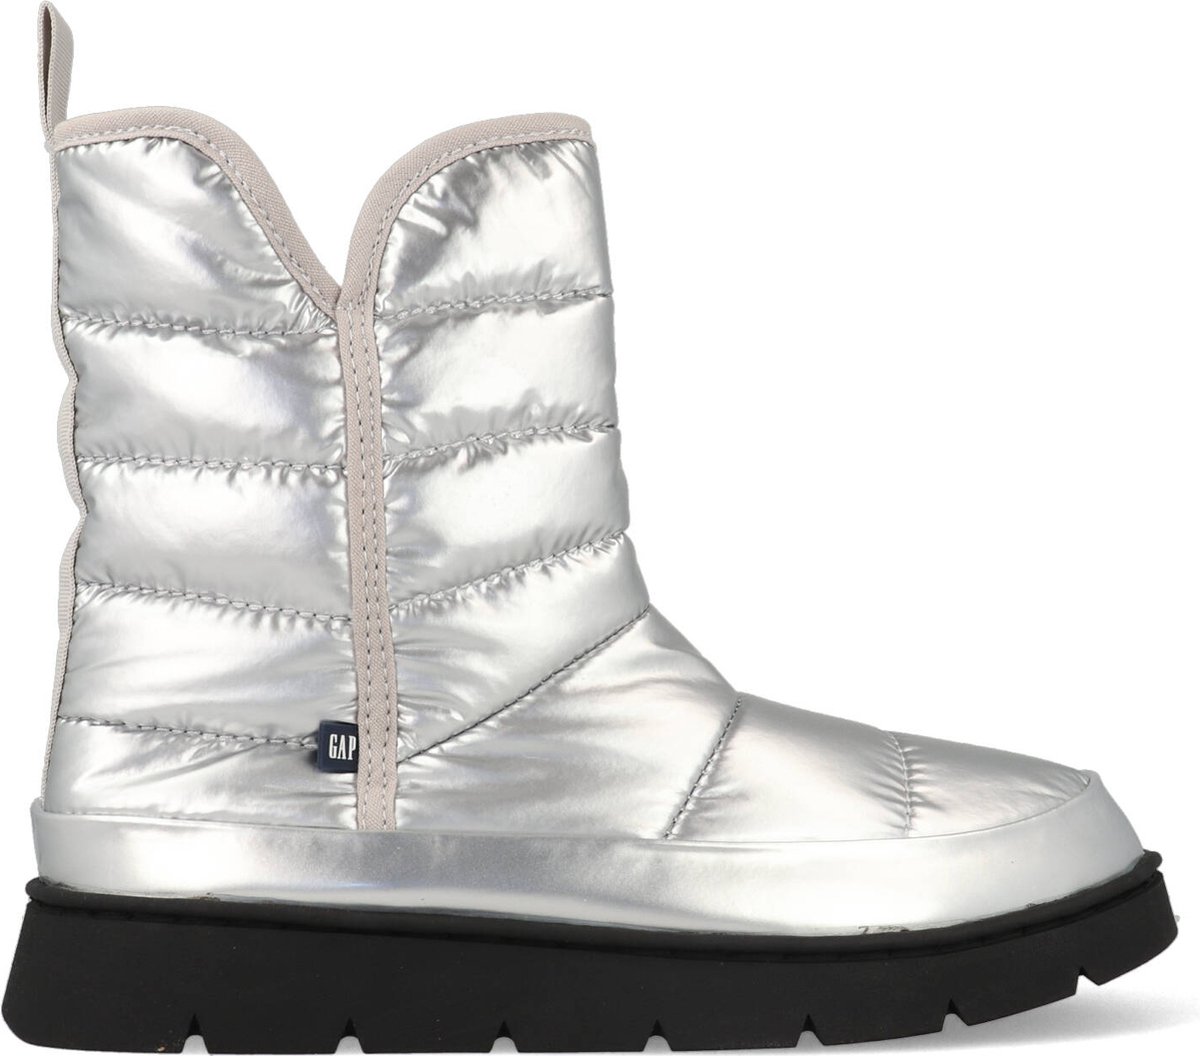 Gap - Ankle Boot/Bootie - Female - Silver - 37 - Laarzen